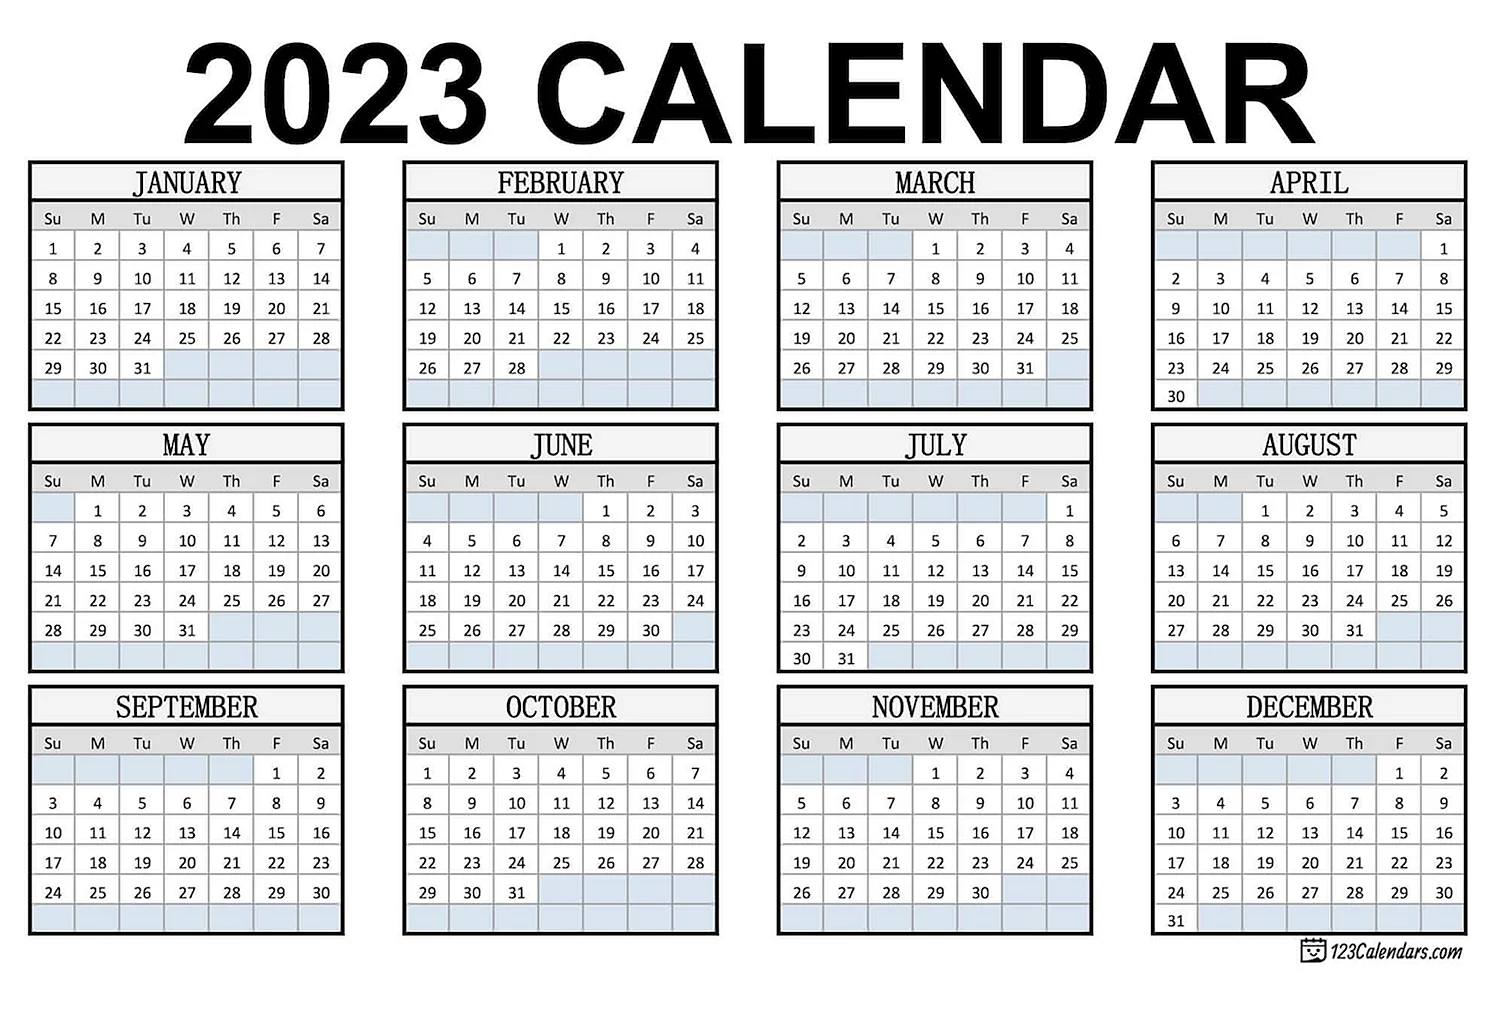 Календарь на 2023 год с праздниками и выходными